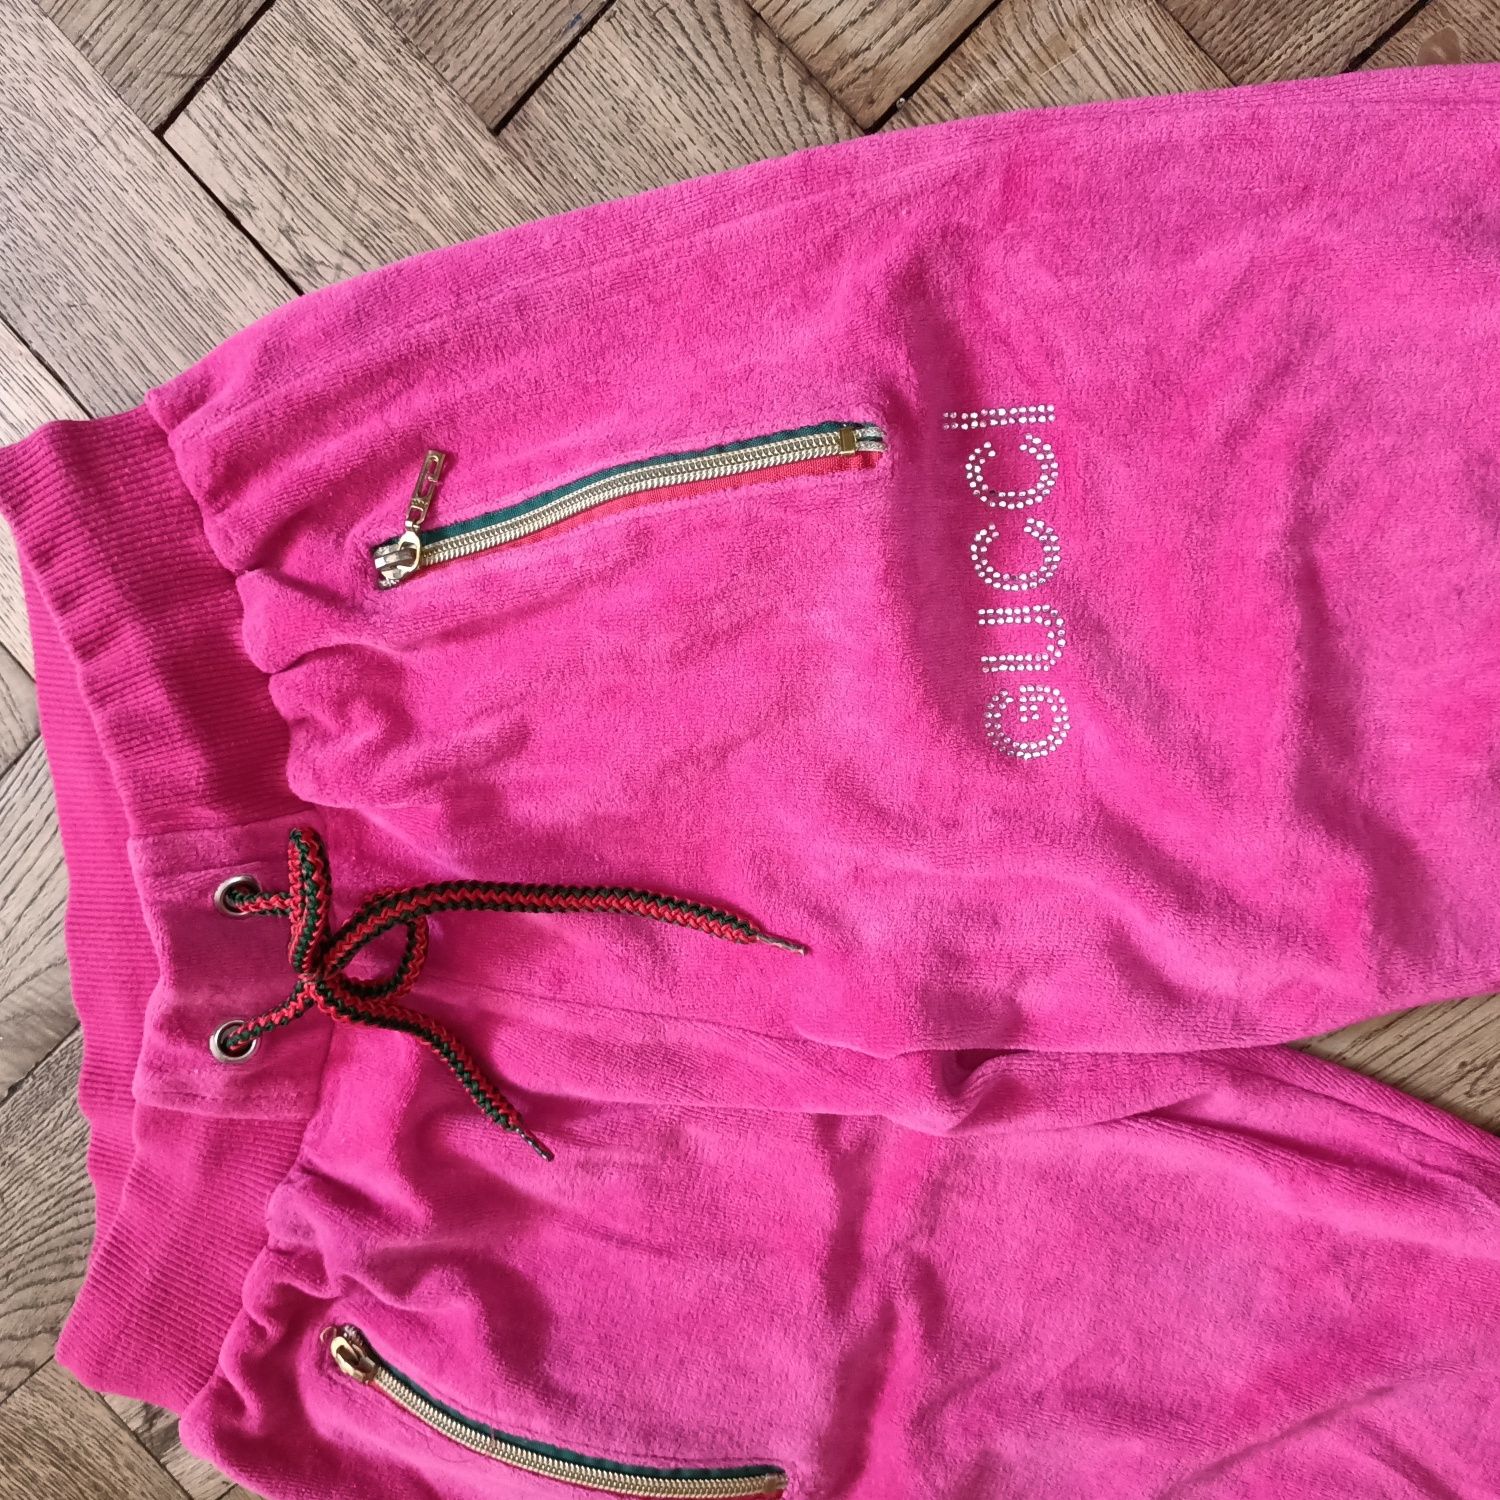 Spodnie dresowe Gucci dresy różowe welurowe damskie sportowe S/M 36/38